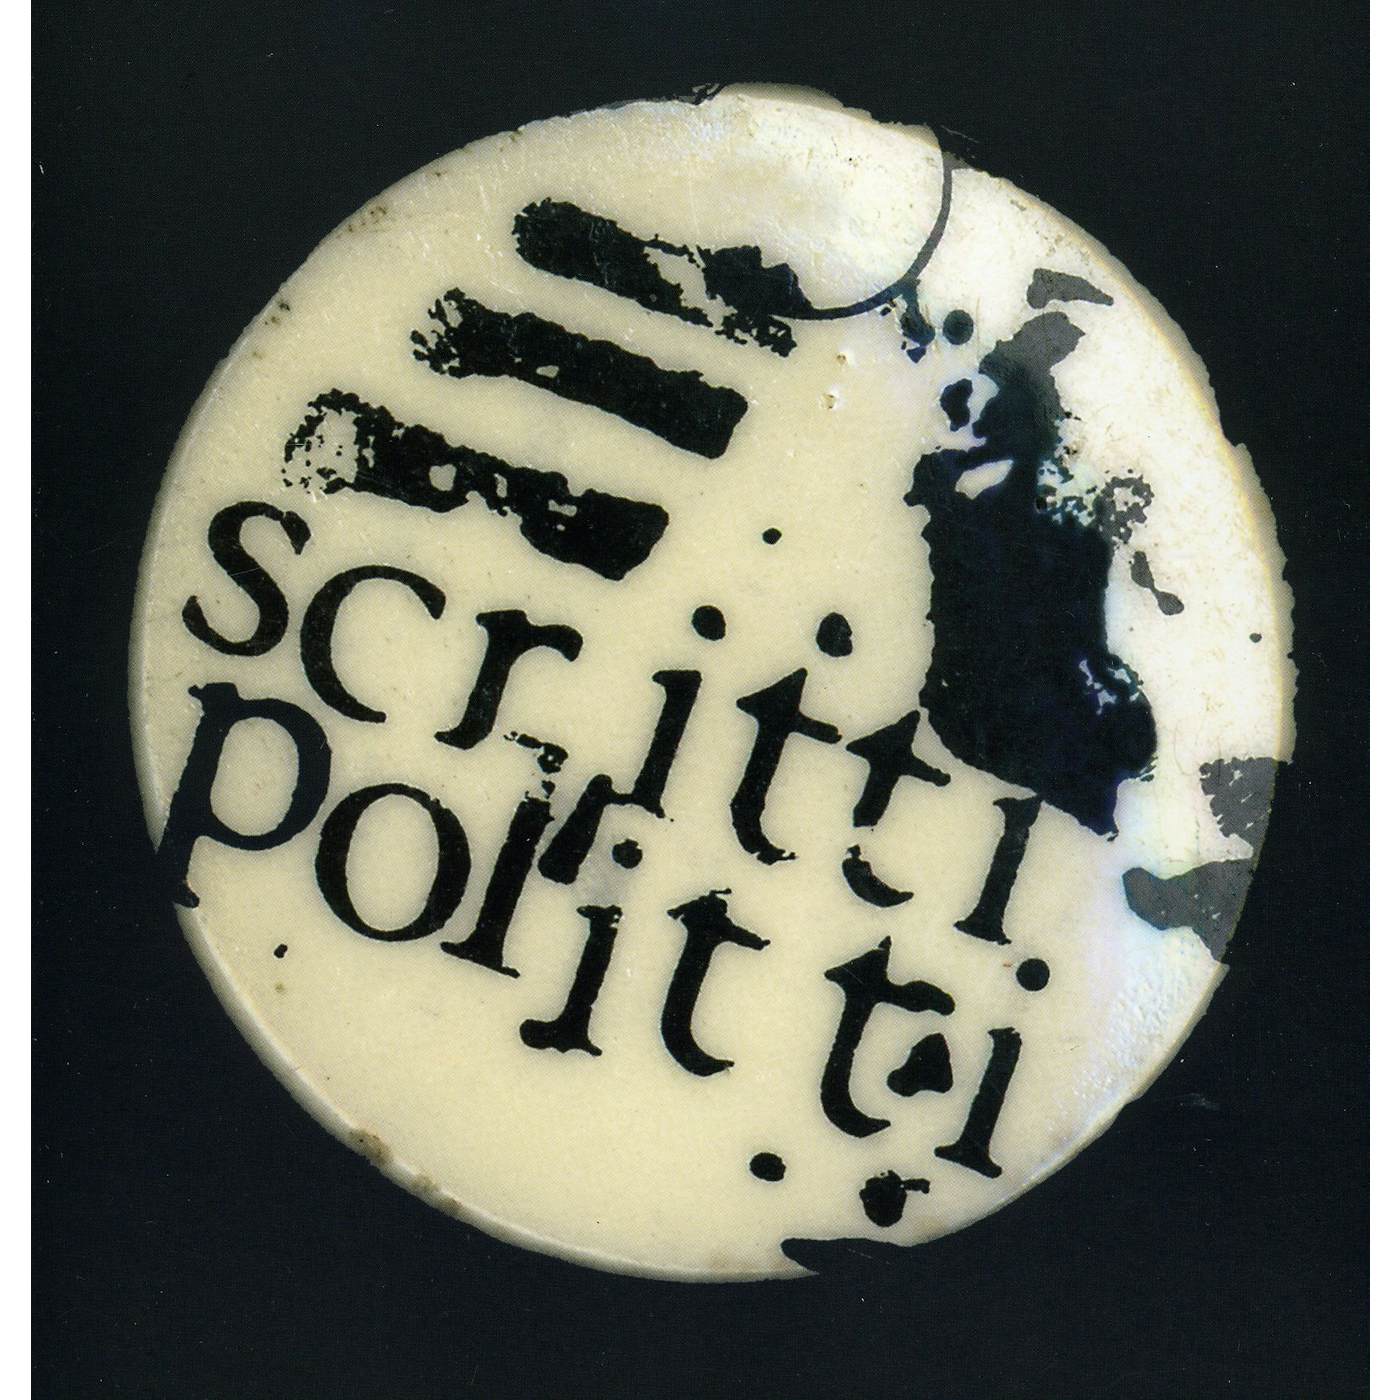 Scritti Politti Early Vinyl Record